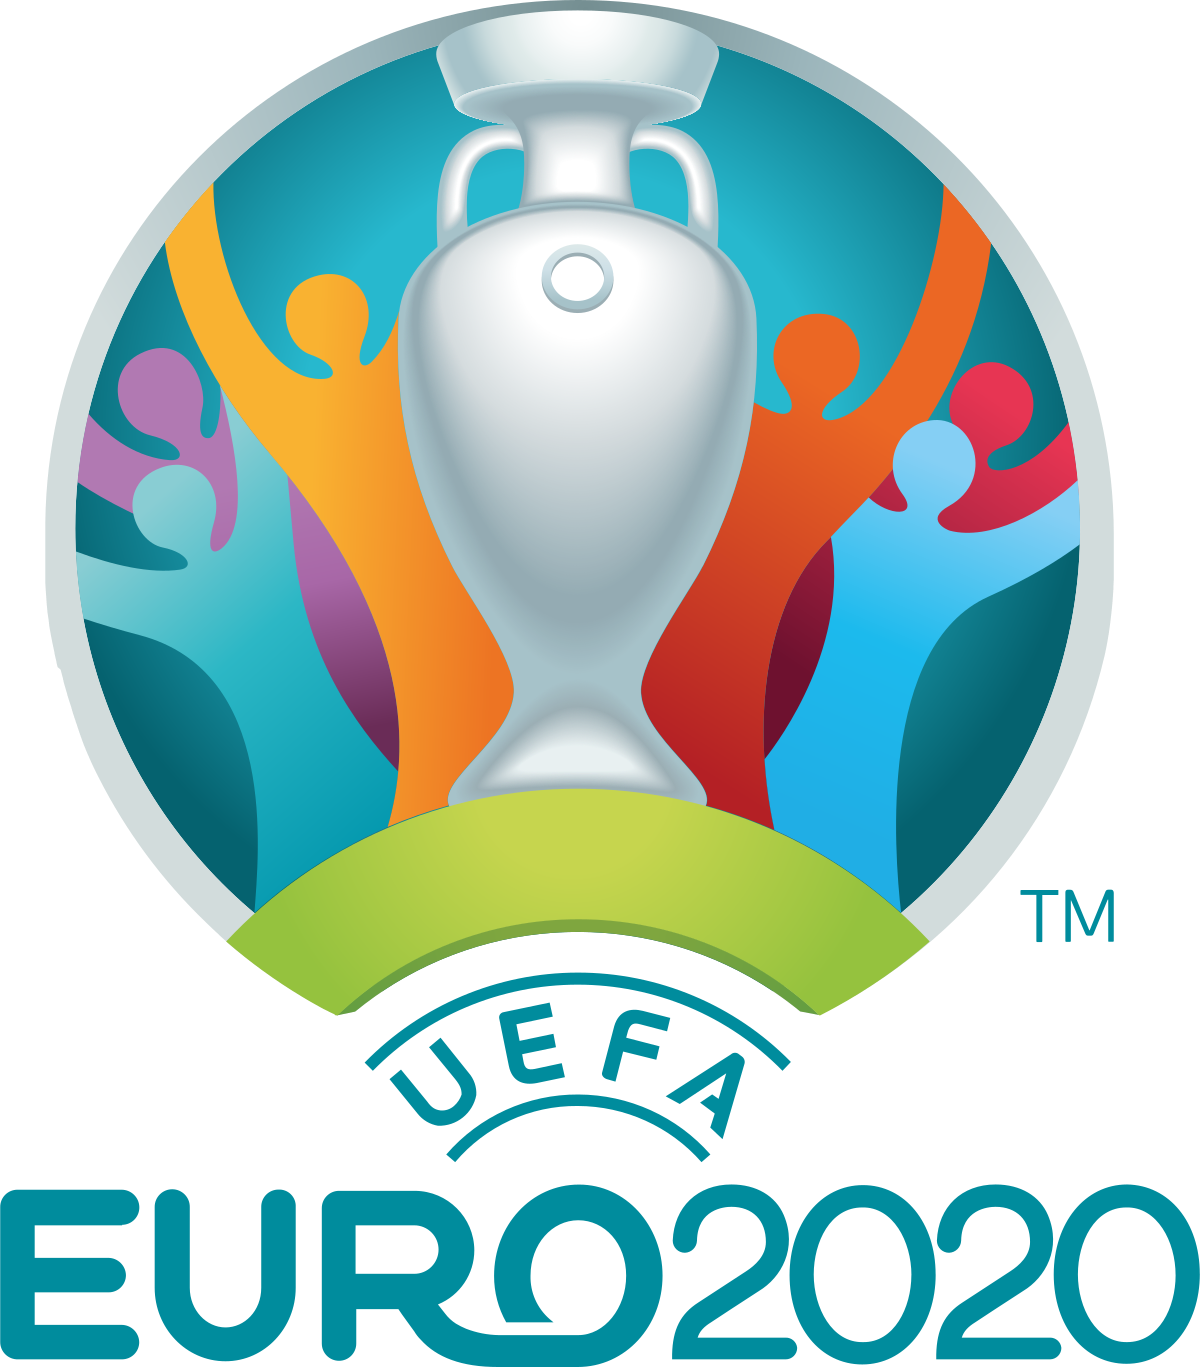 Campionato europeo di calcio 2020 - Wikipedia